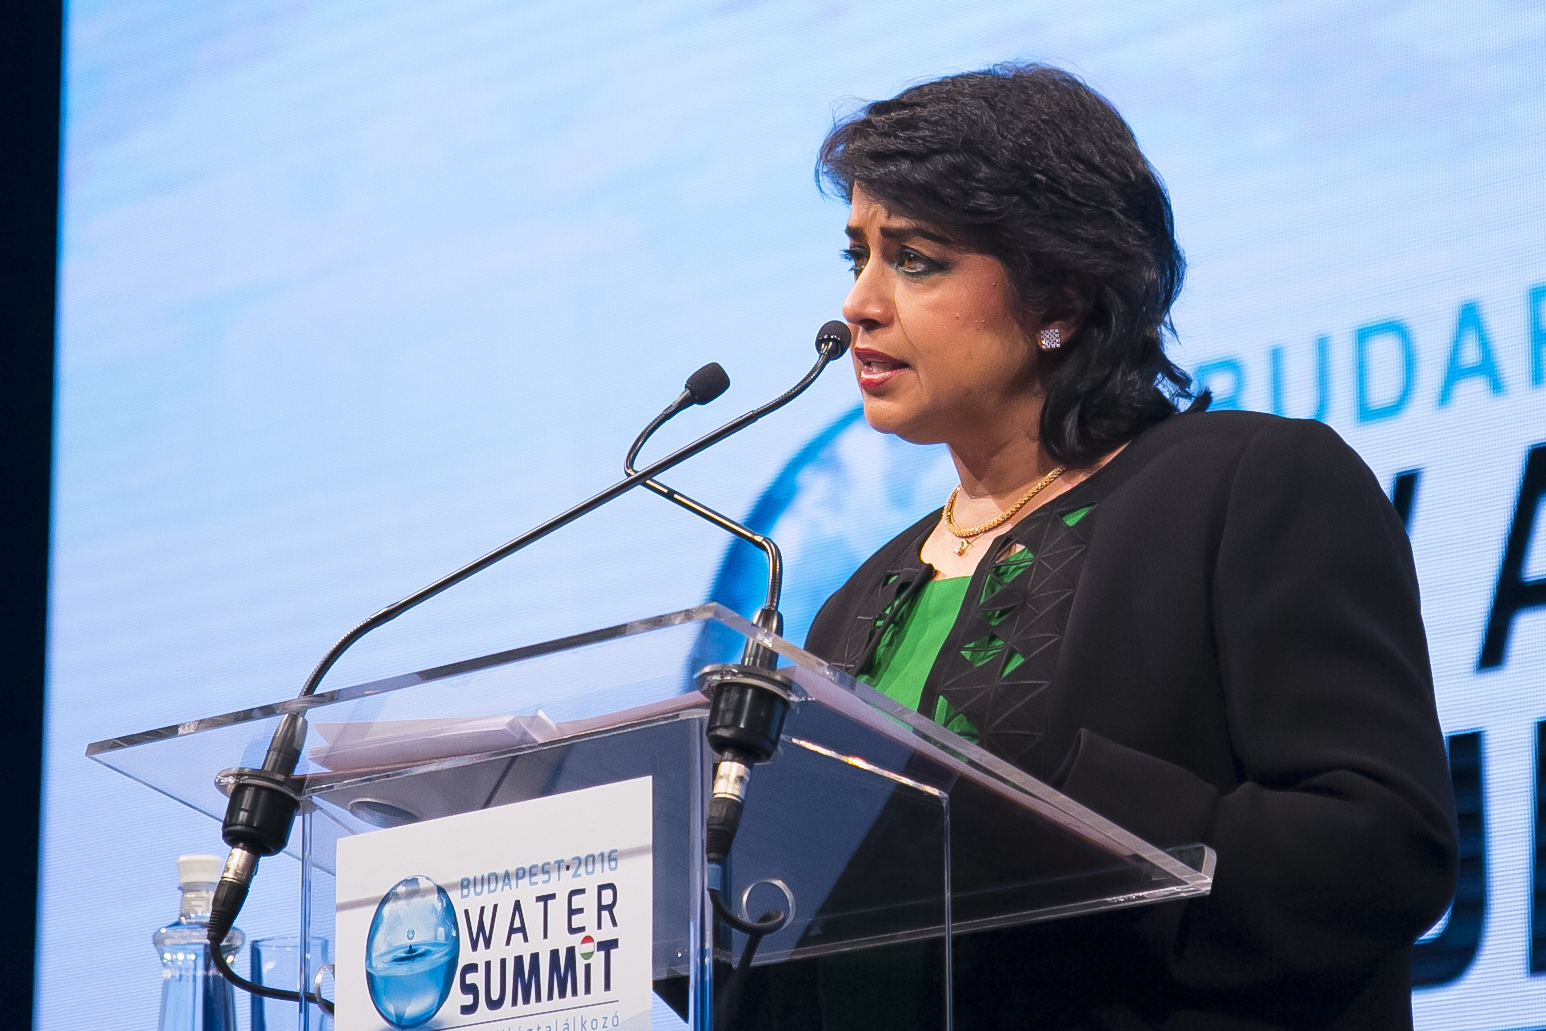 Sommet de l&rsquo;eau à Budapest: La Présidente de l&rsquo;île Maurice Ameenah Gurib-Fakim défend la cause des îles